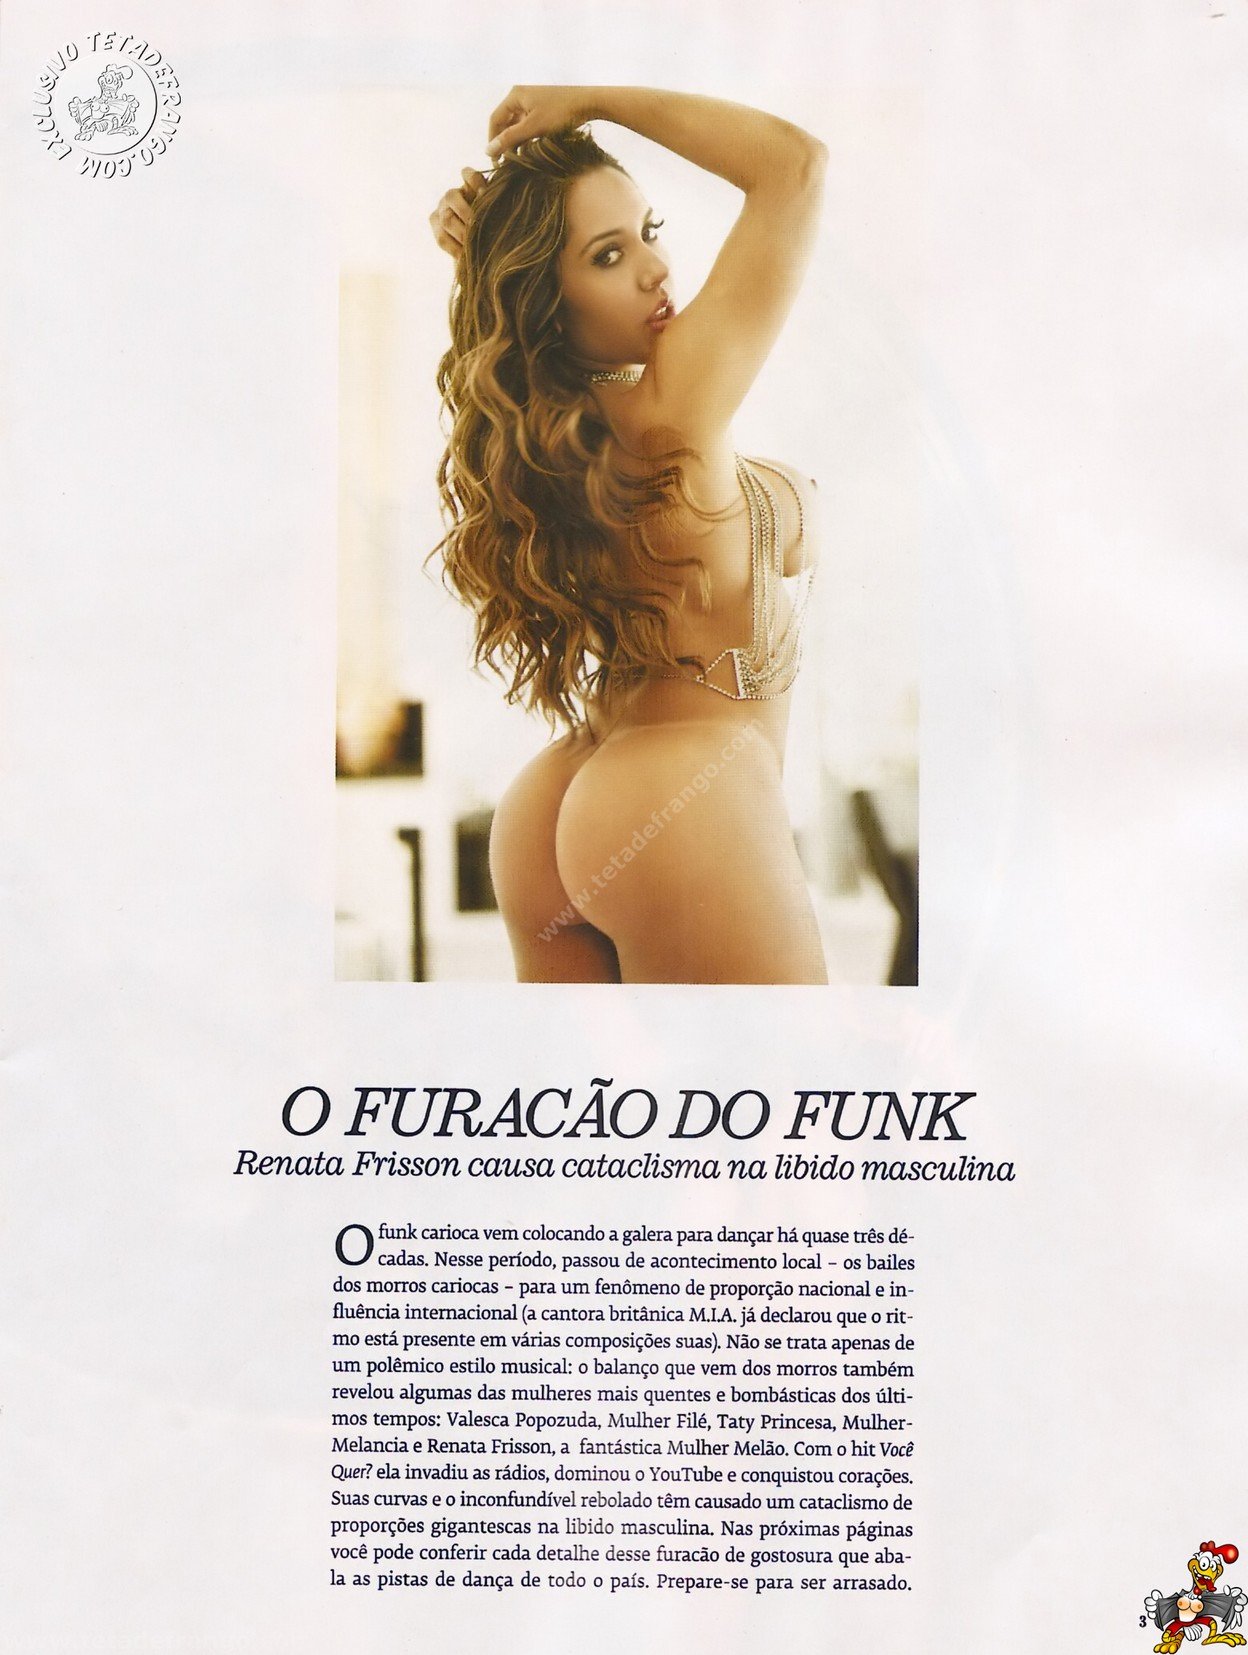 Fotos Playboy Mulher Melão Renata Frisson (2)